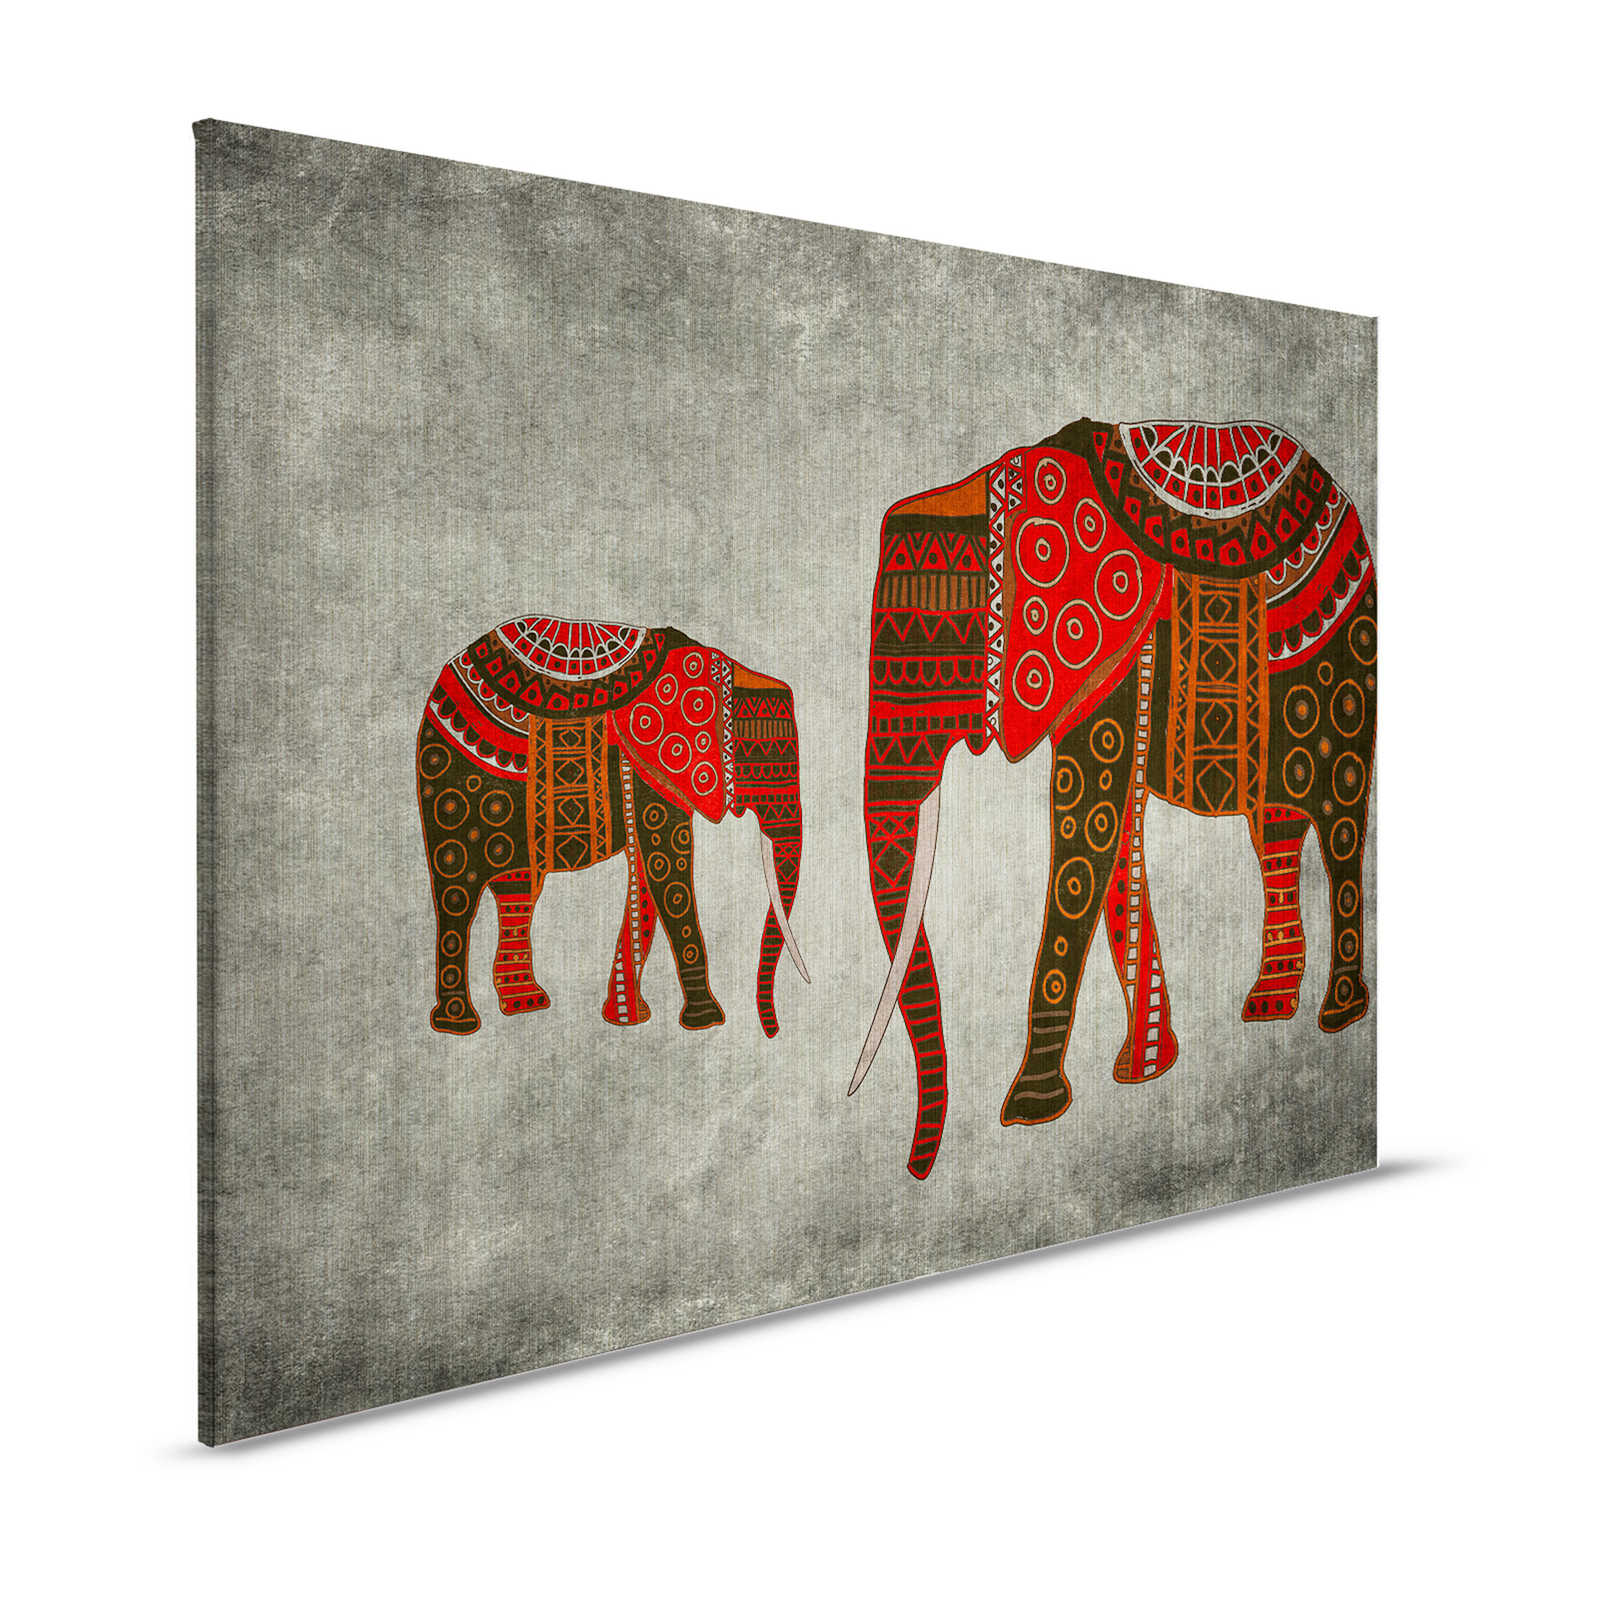 Nairobi 4 - Toile éléphant avec motifs ethniques - 1,20 m x 0,80 m
